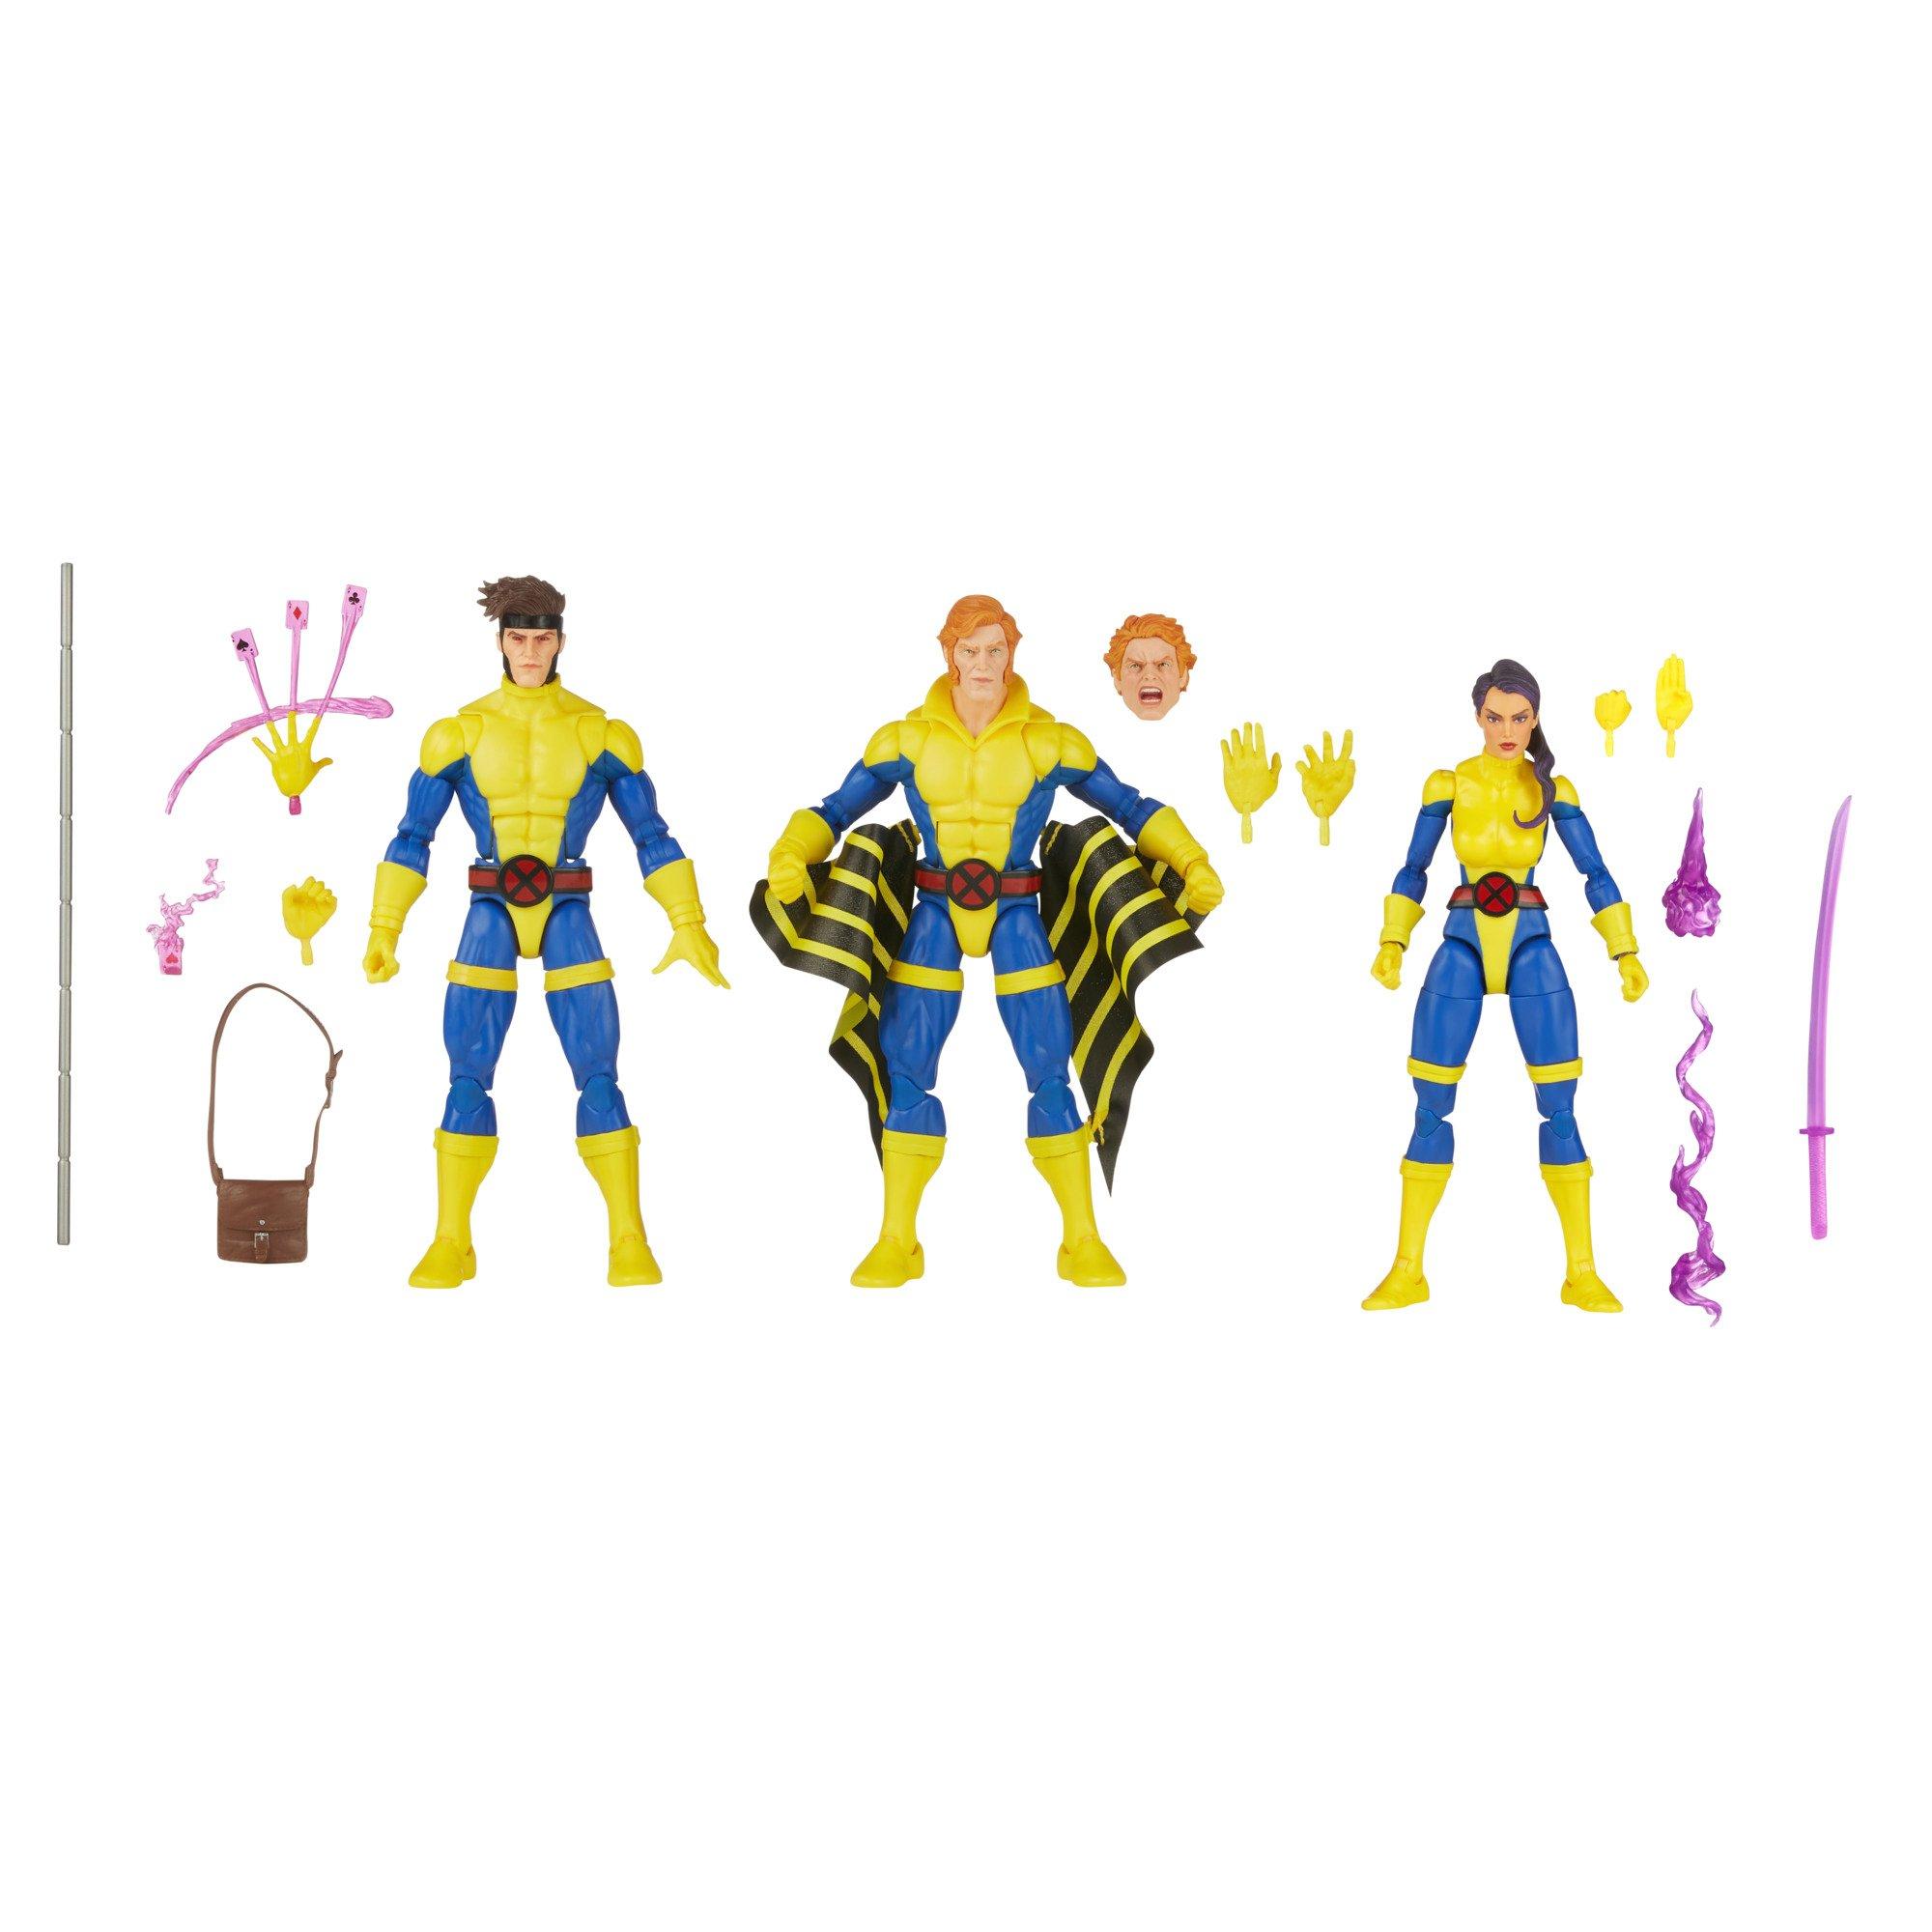 Hasbro Marvel Legends Series X-Men 6-in Action Figure Set 3-Pack - Gambit, Marvel's Banshee, Psylocke (GameStop)